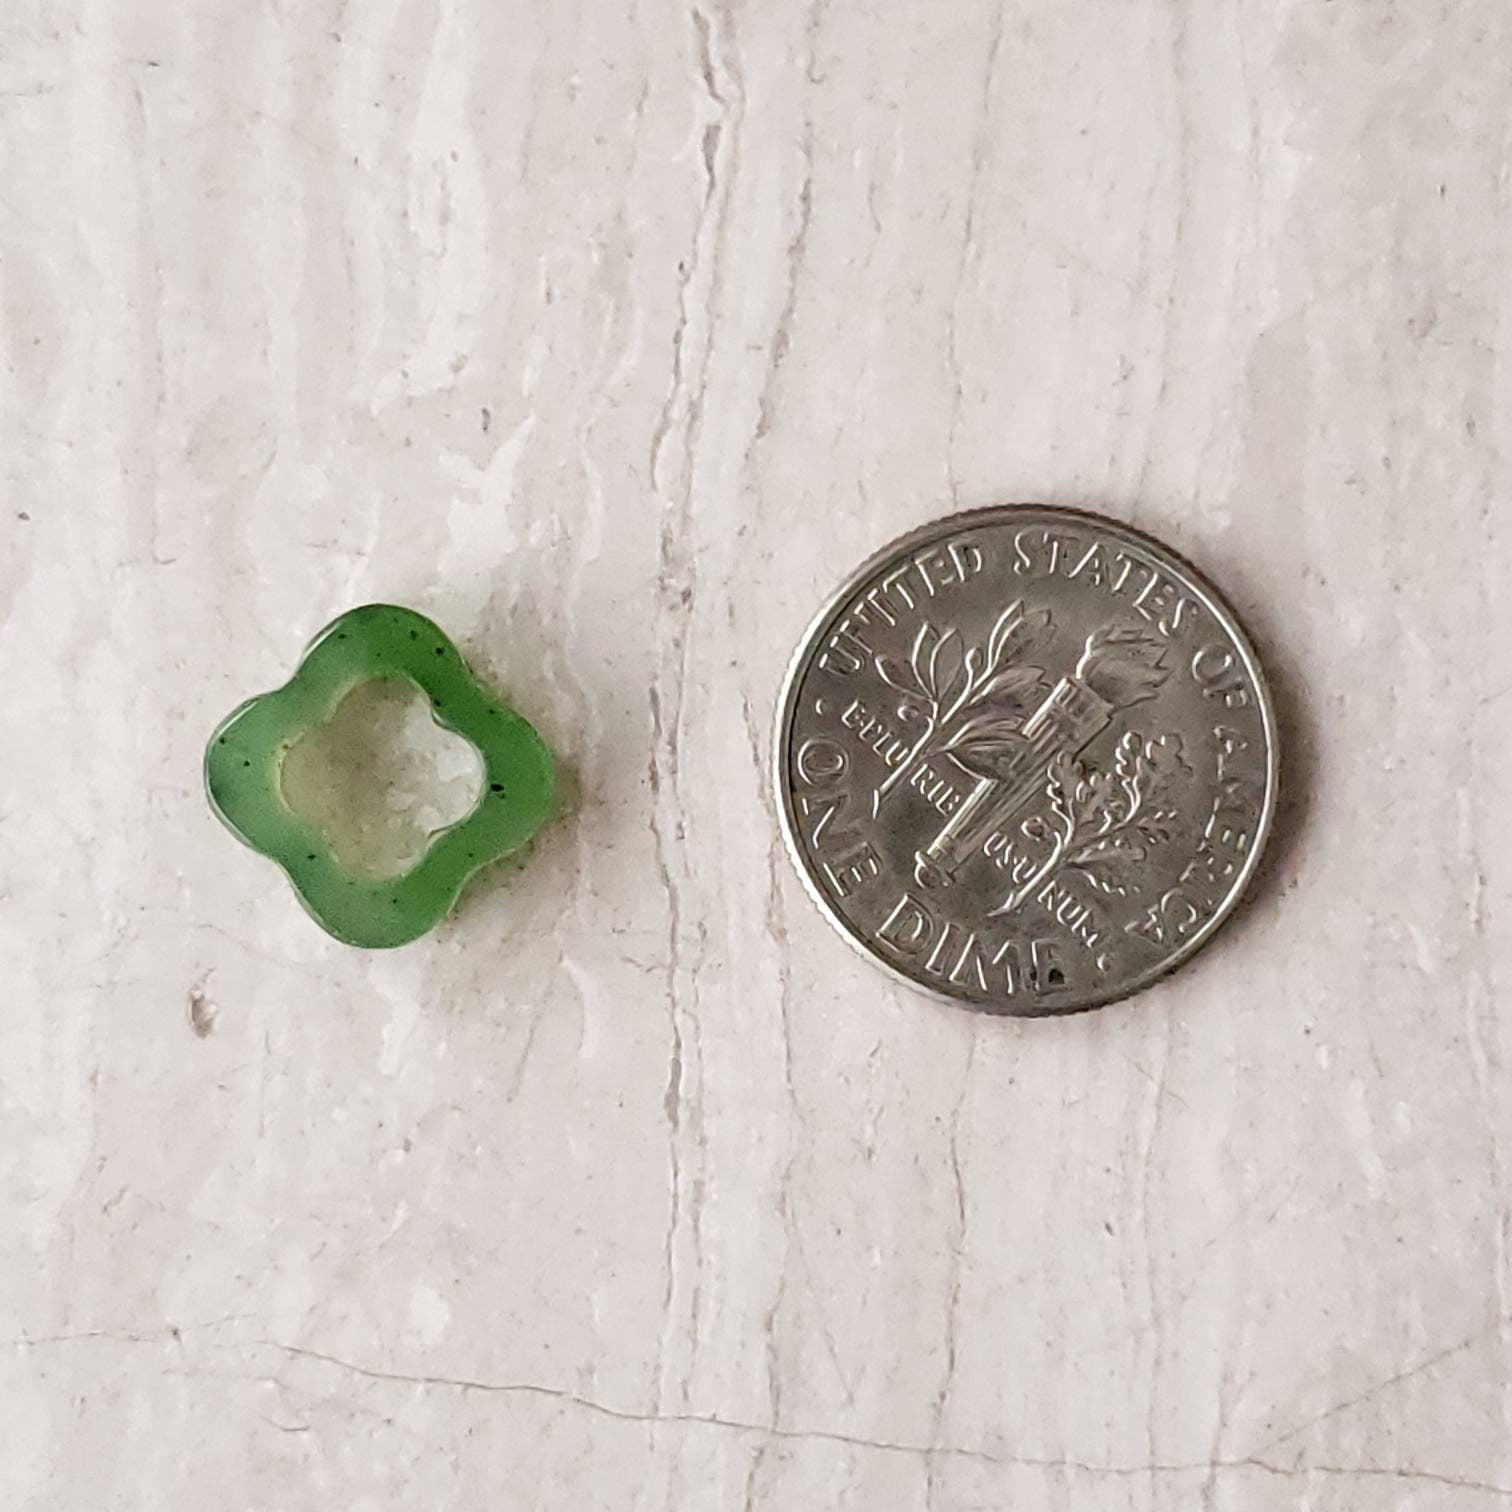 Jade floating 4 leaf clover charm pendant